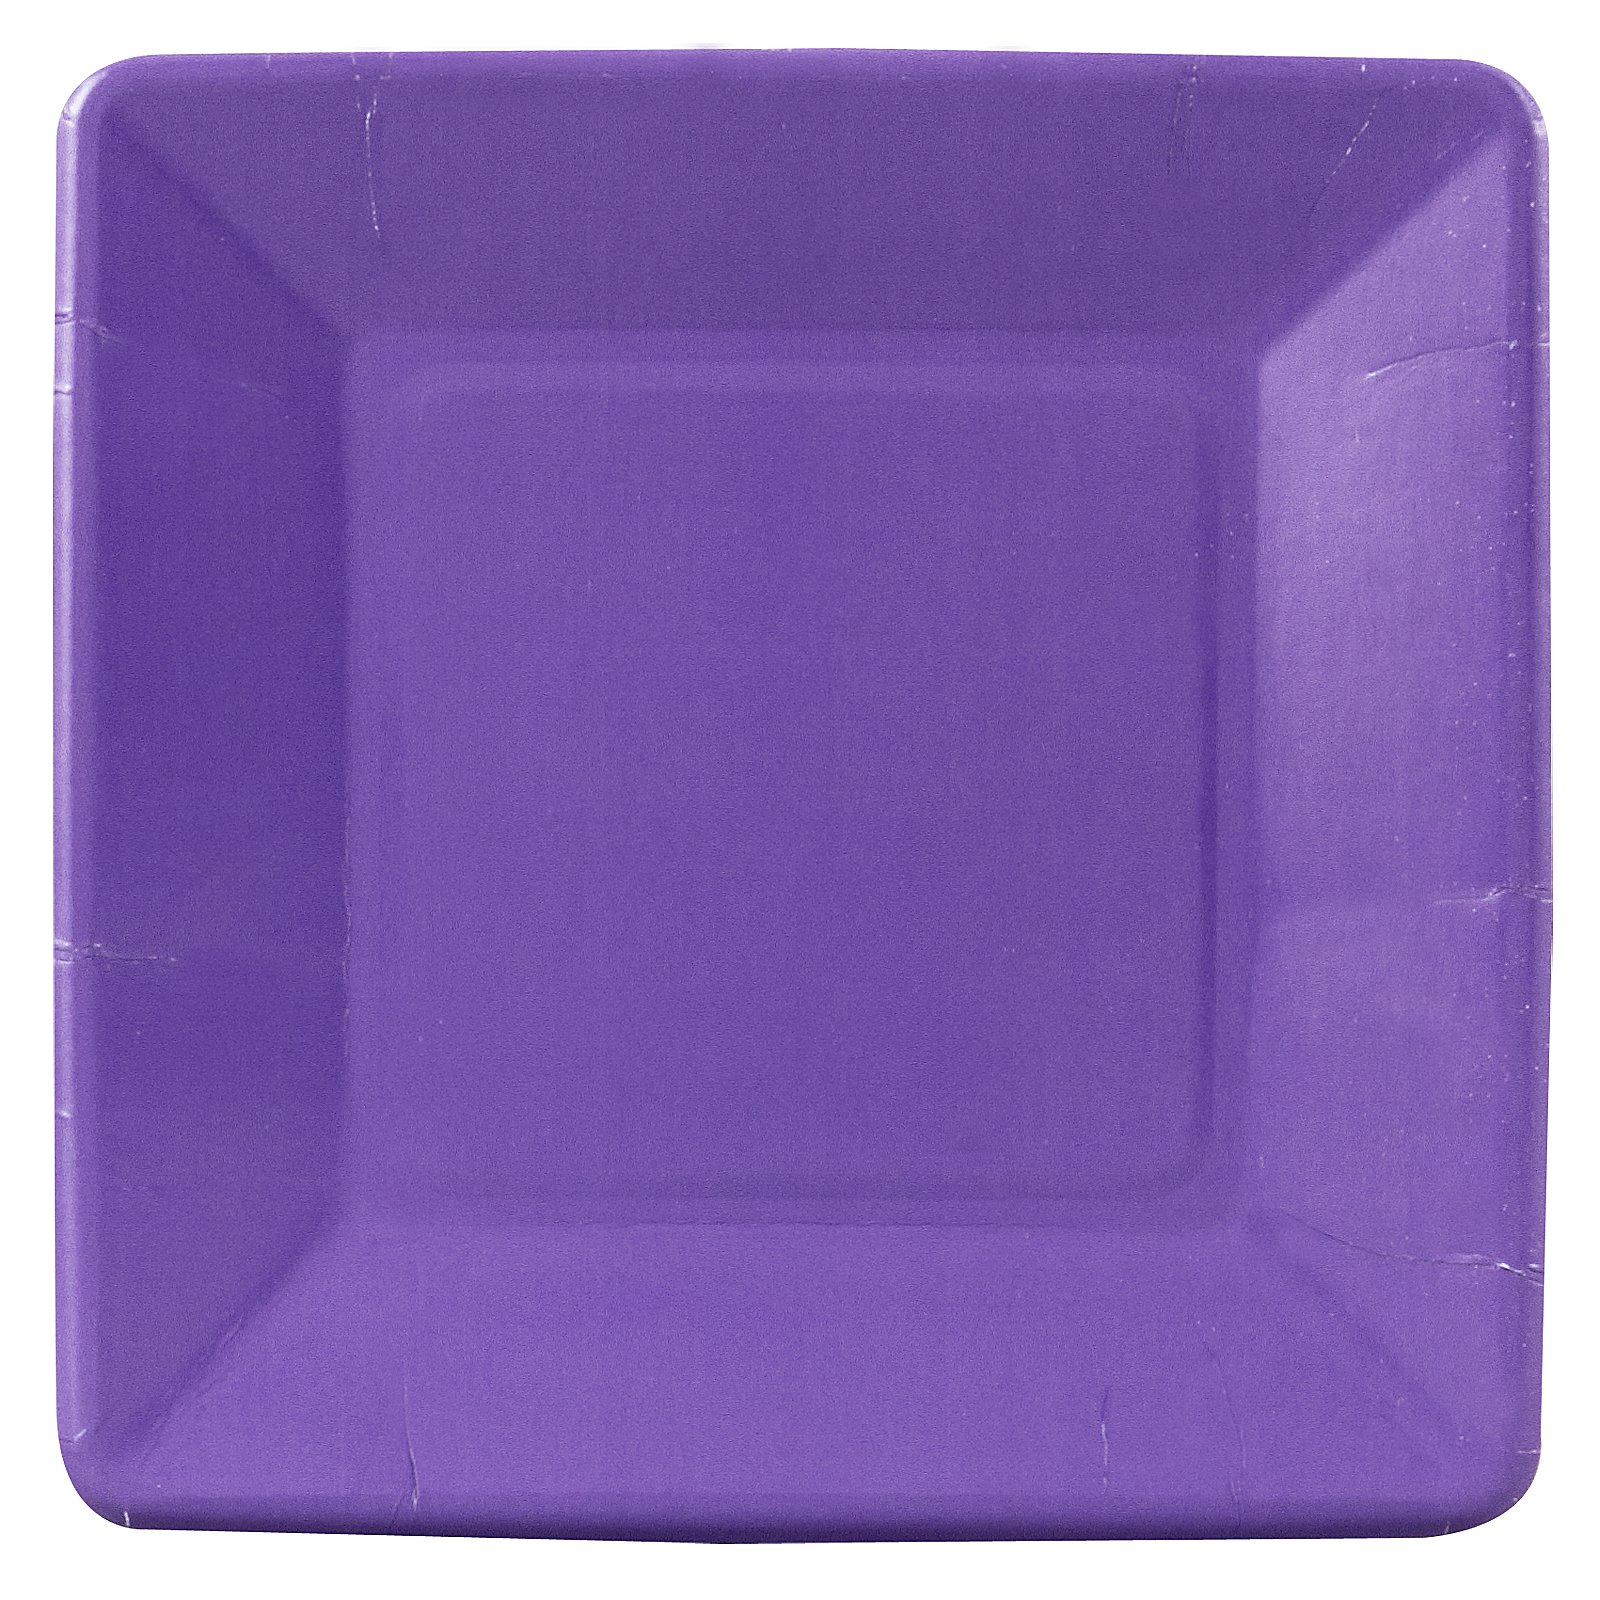 Perfect Purple (Purple) Square Dessert Plates (18 count)